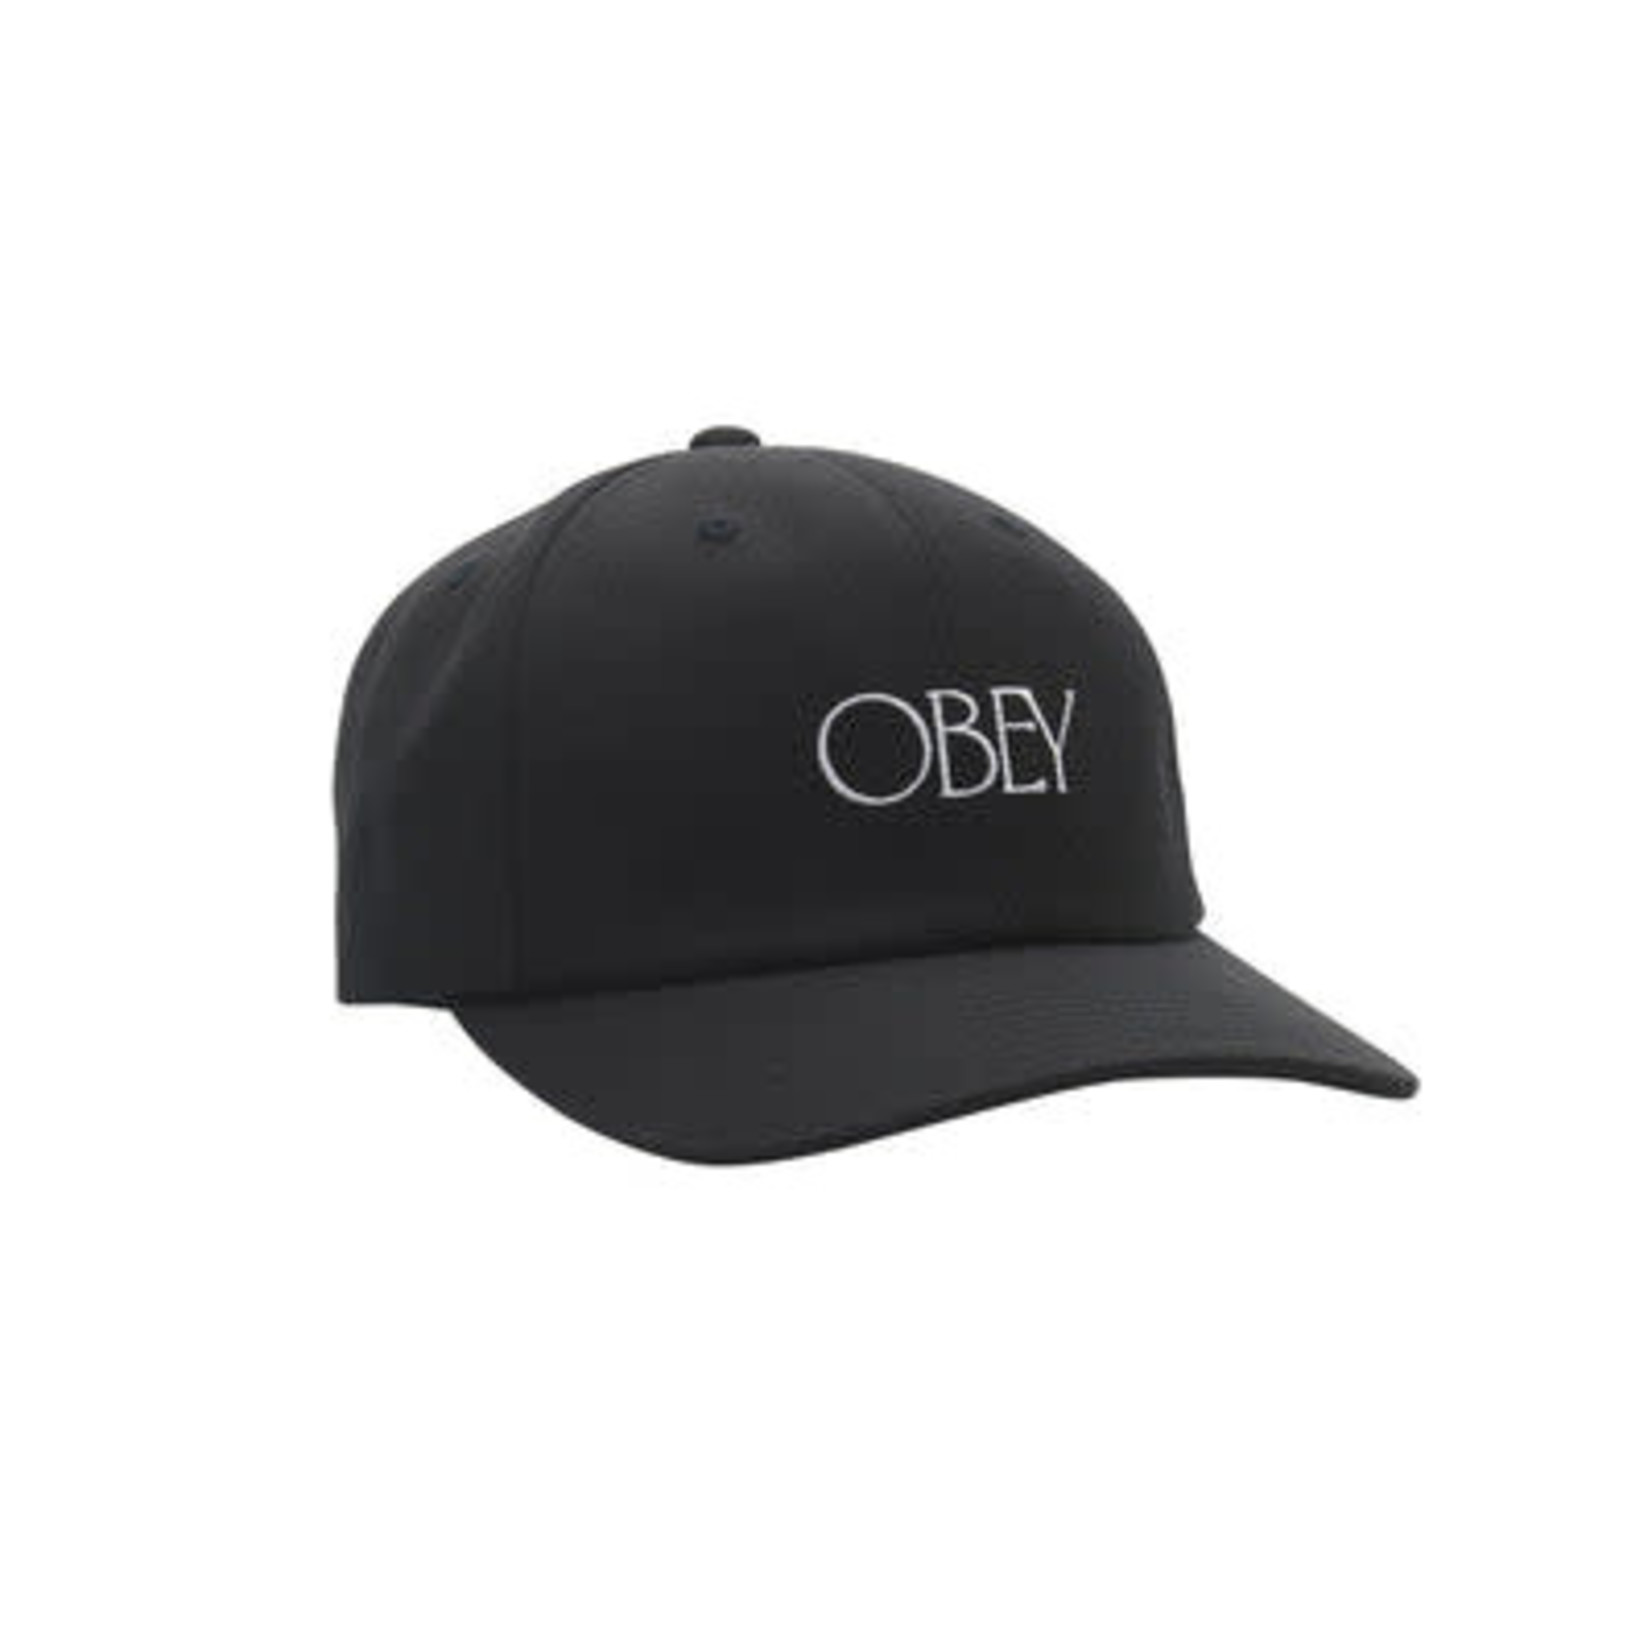 OBEY Obey Hedges 6 Panel Strapback Black